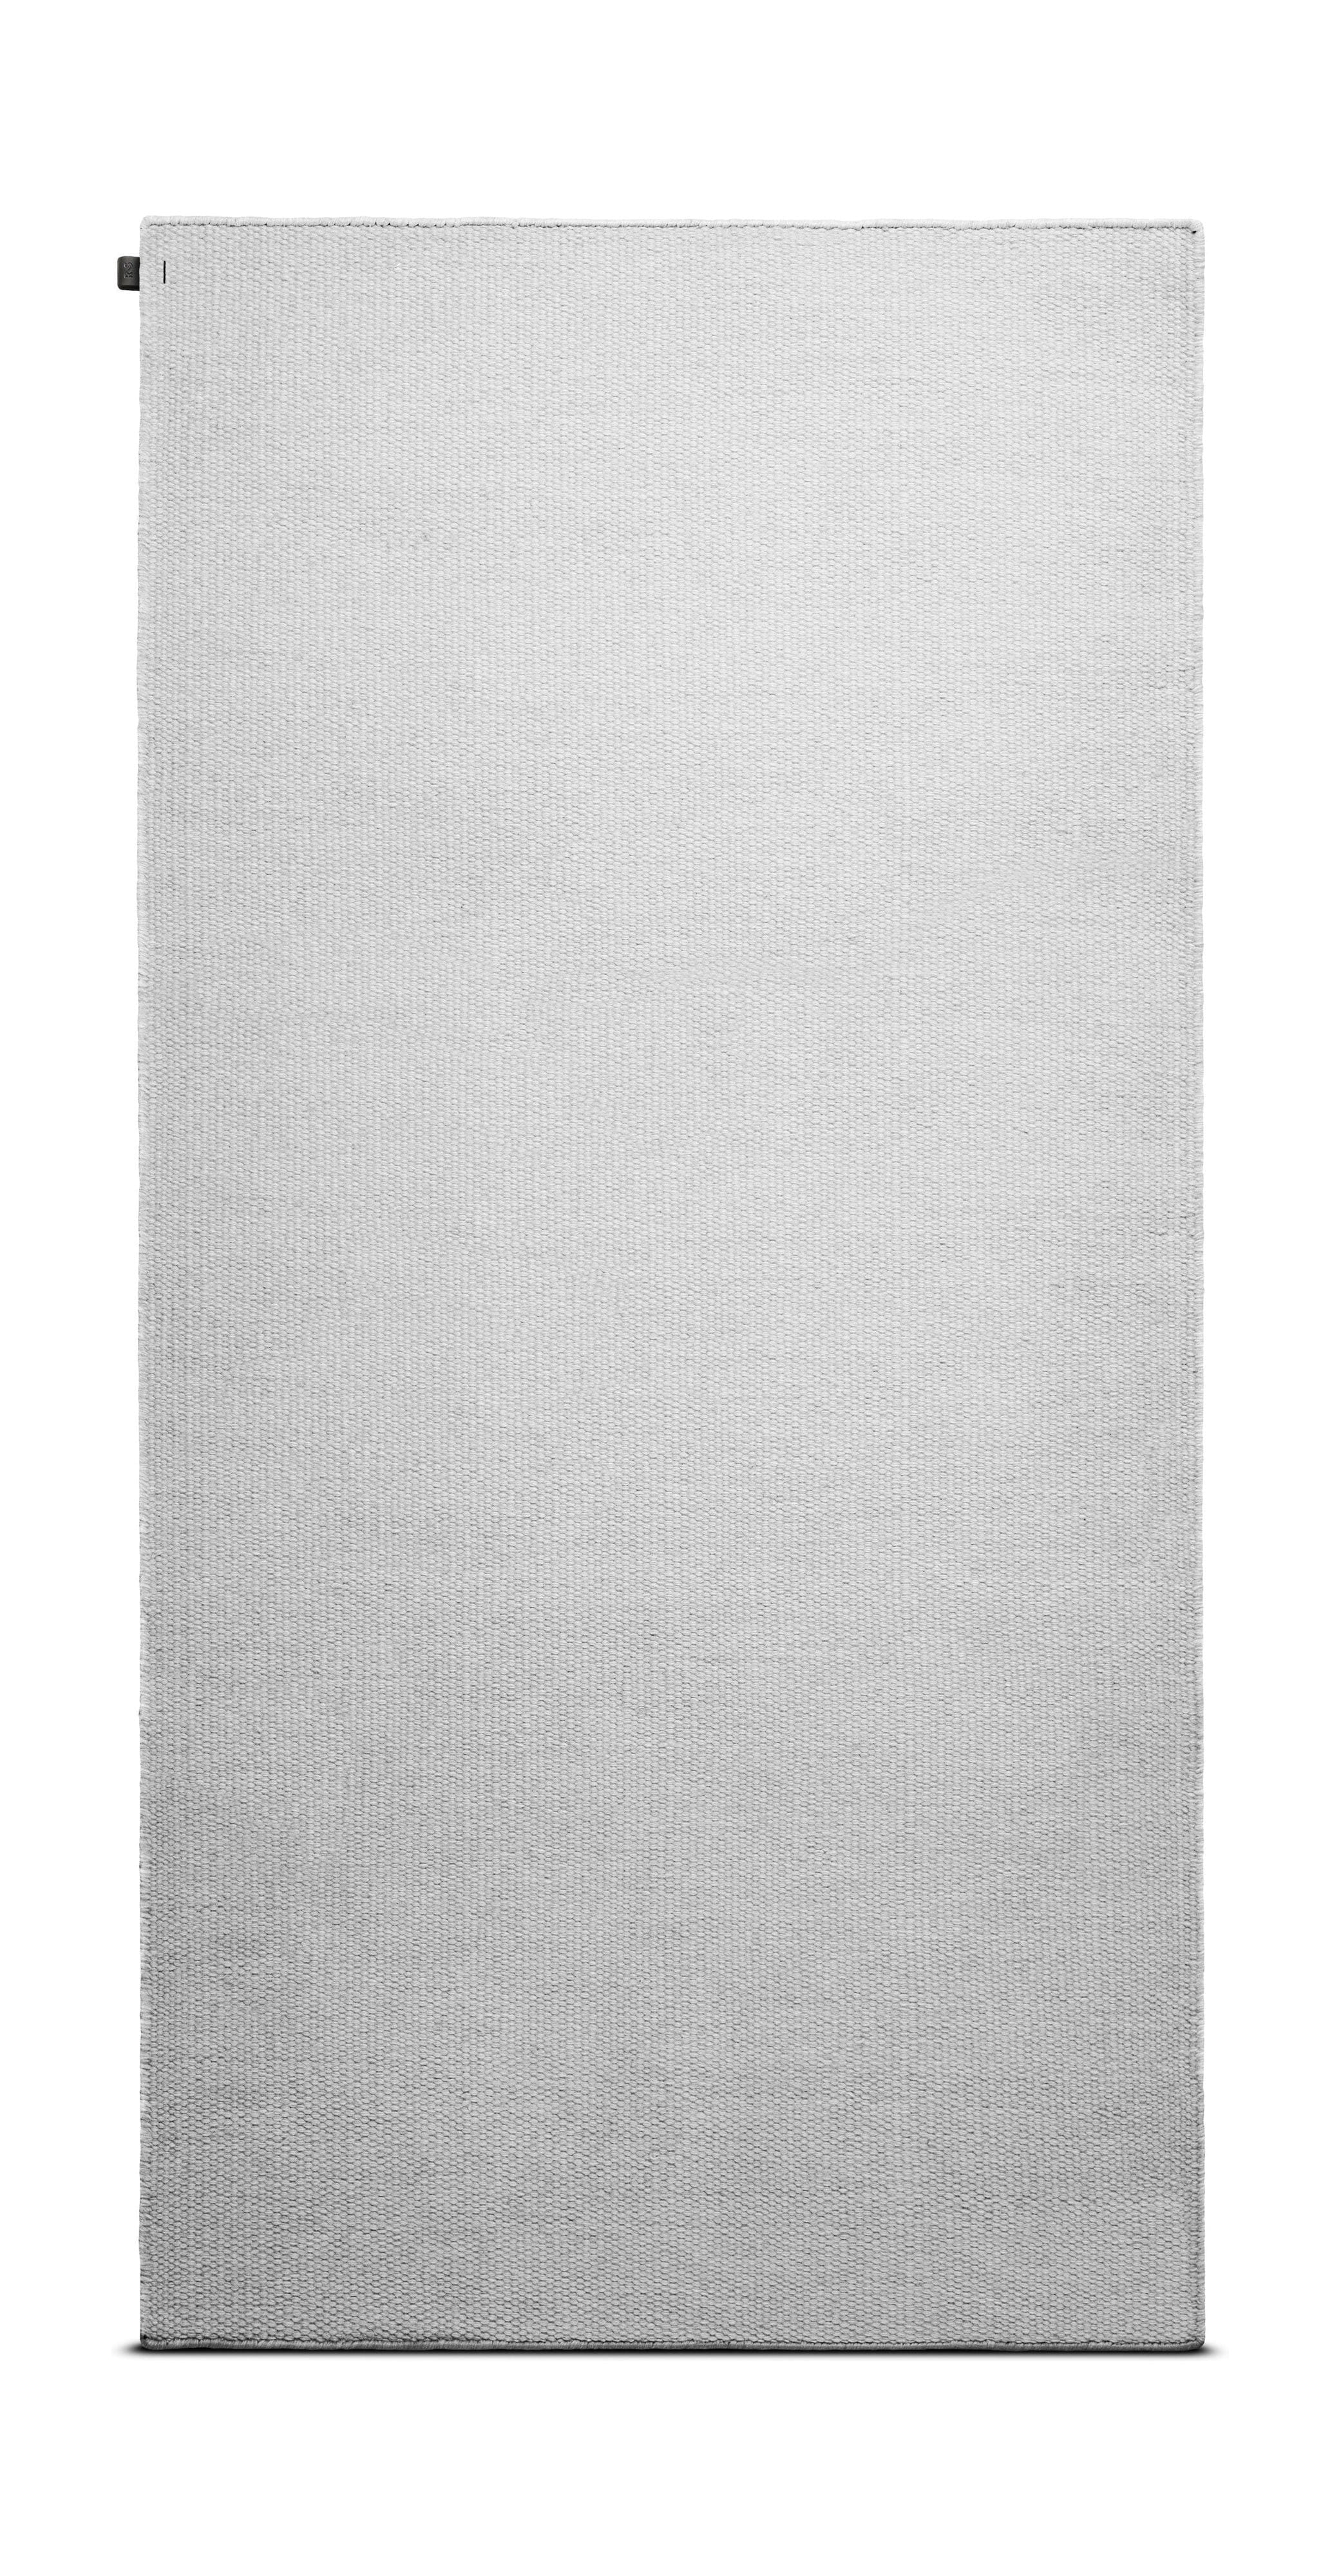 Rug Solid Huisdier tapijt 170 x 240 cm, maan